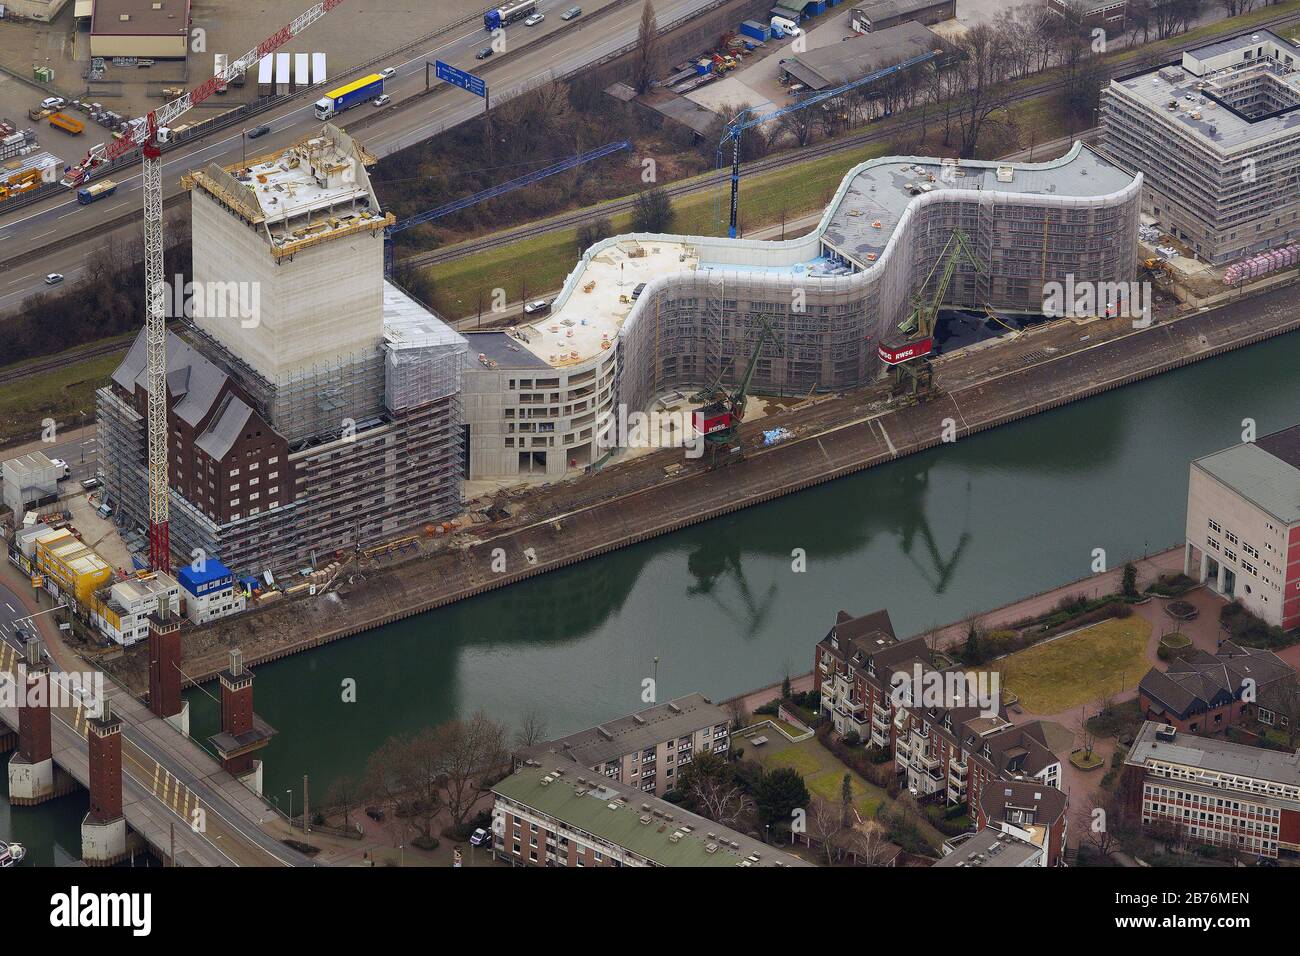 Archives nationales du NRW s'appuyant sur un ancien quai du port intérieur de Duisburg, 06.03.2012, vue aérienne, Allemagne, Rhénanie-du-Nord-Westphalie, région de la Ruhr, Duisburg Banque D'Images